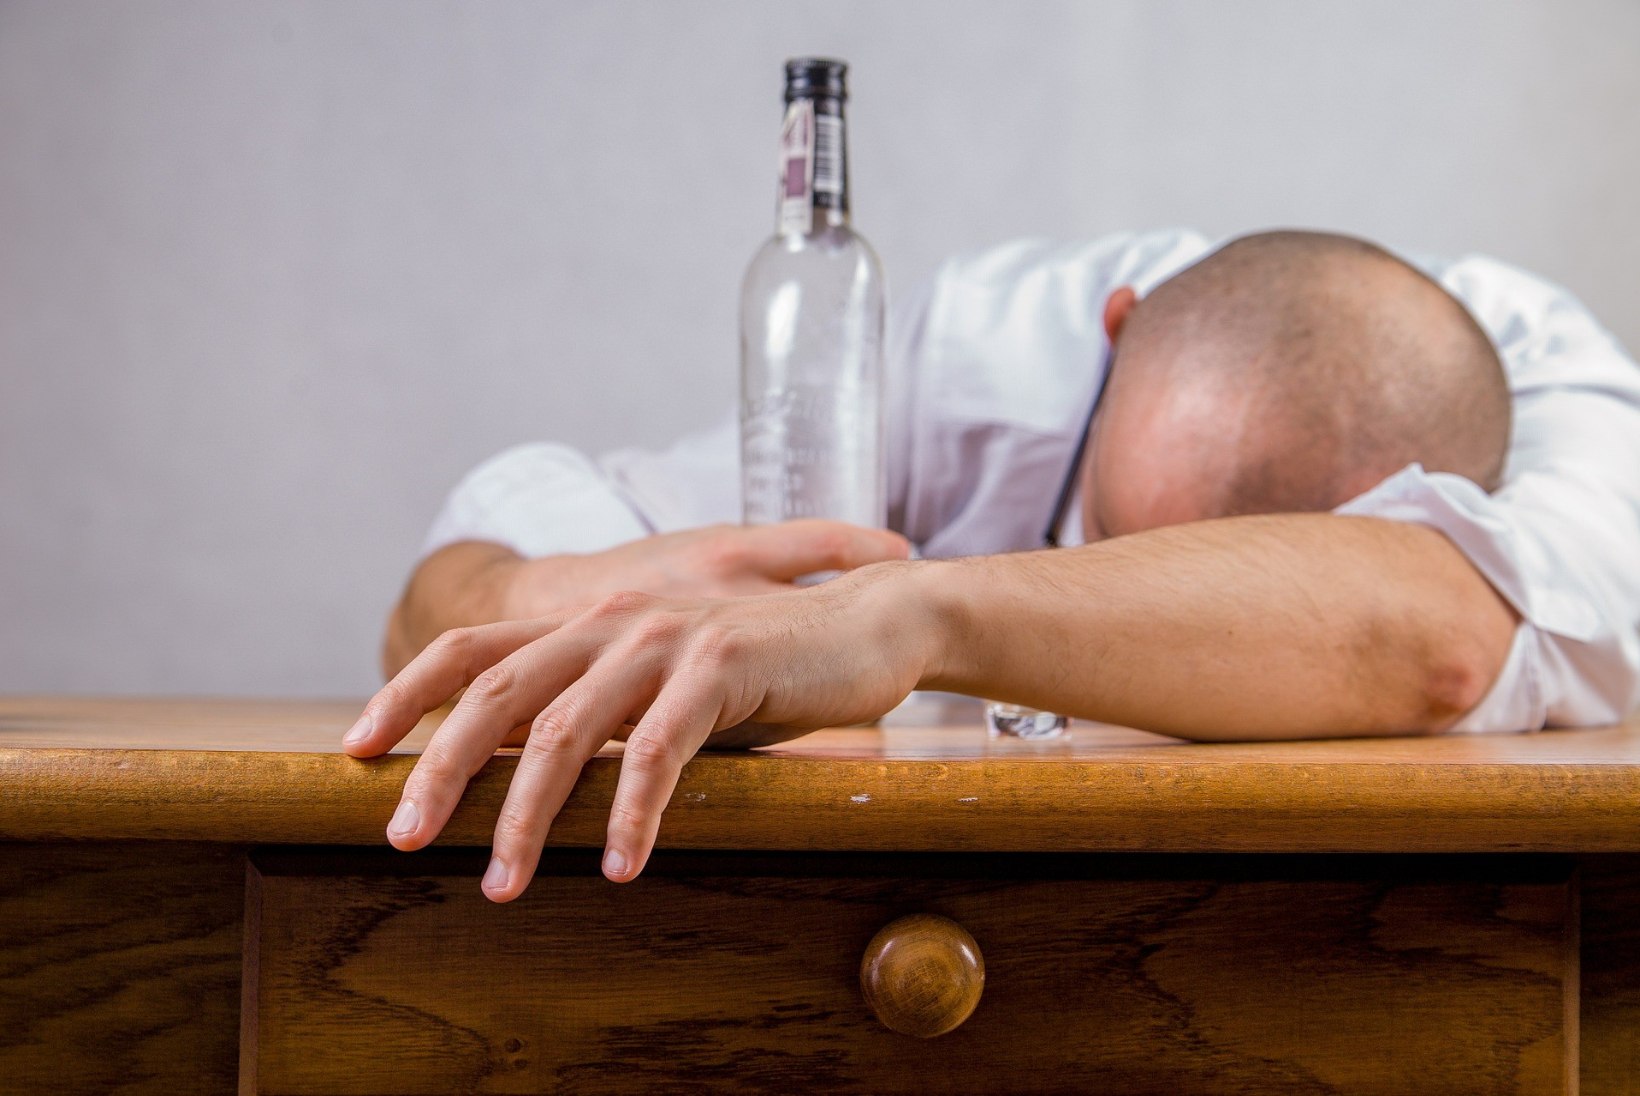 Milline alkohol tekitab kõige raskemat pohmelli?